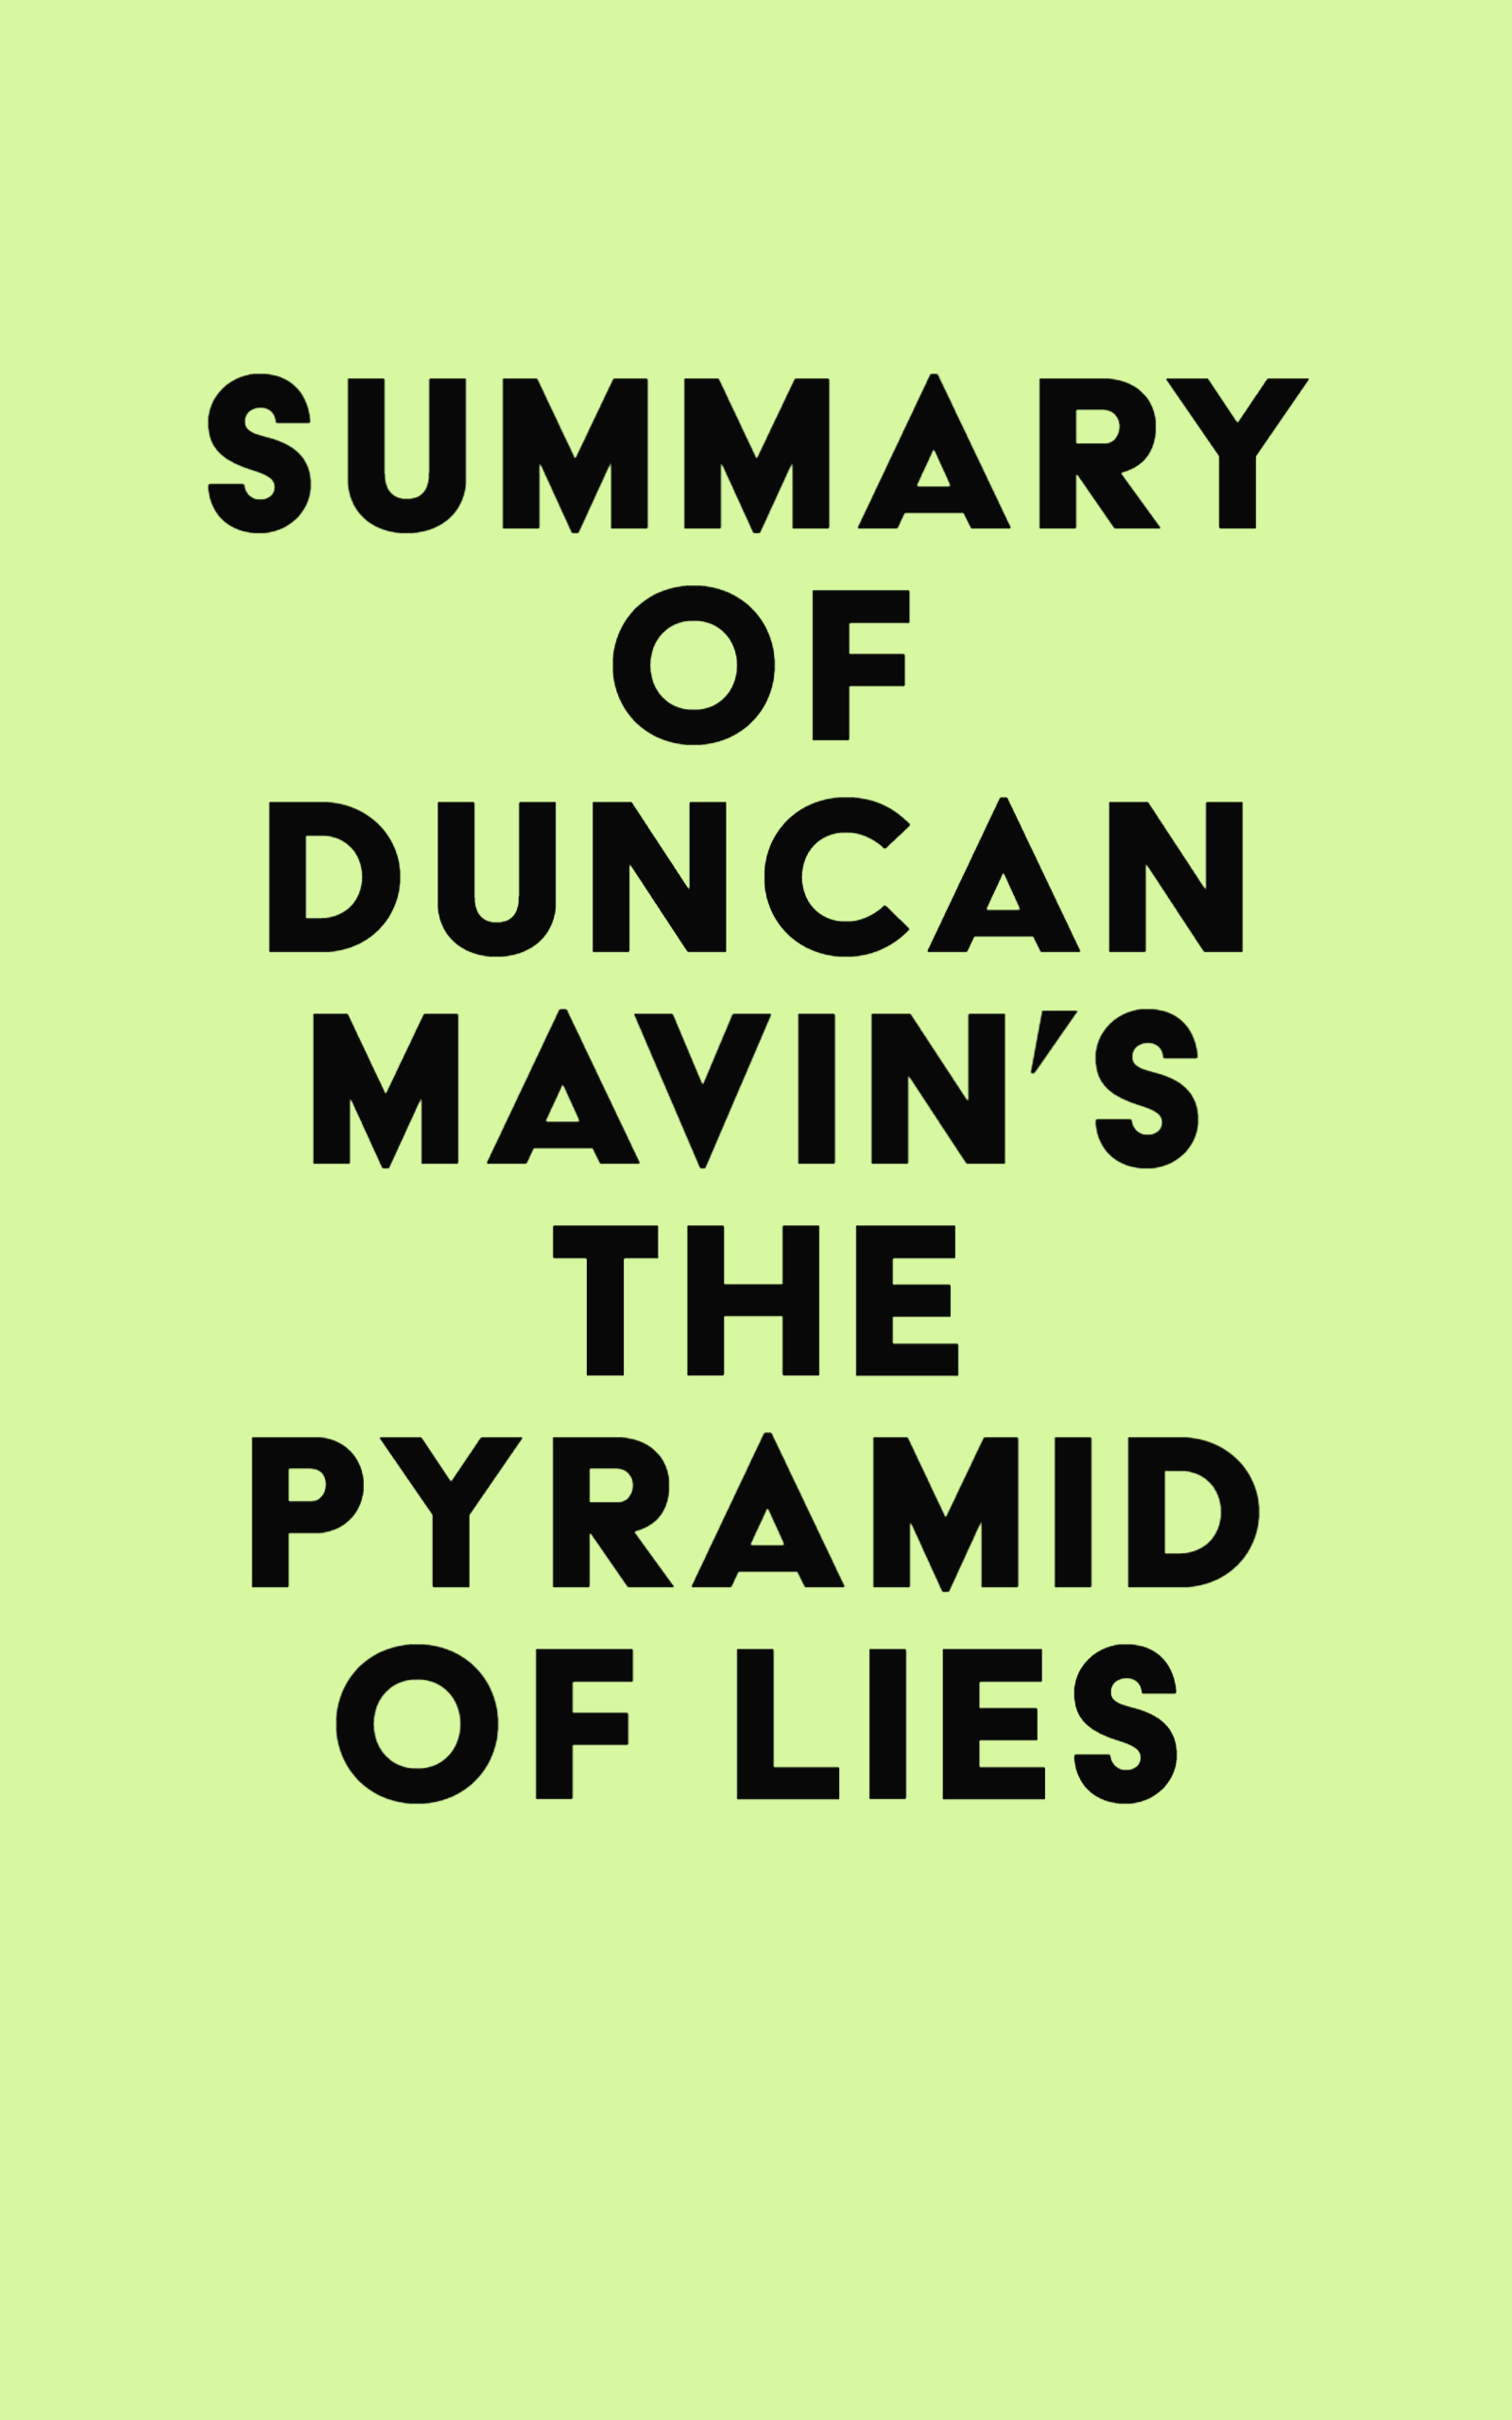 Summary of Duncan Mavin's The Pyramid of Lies